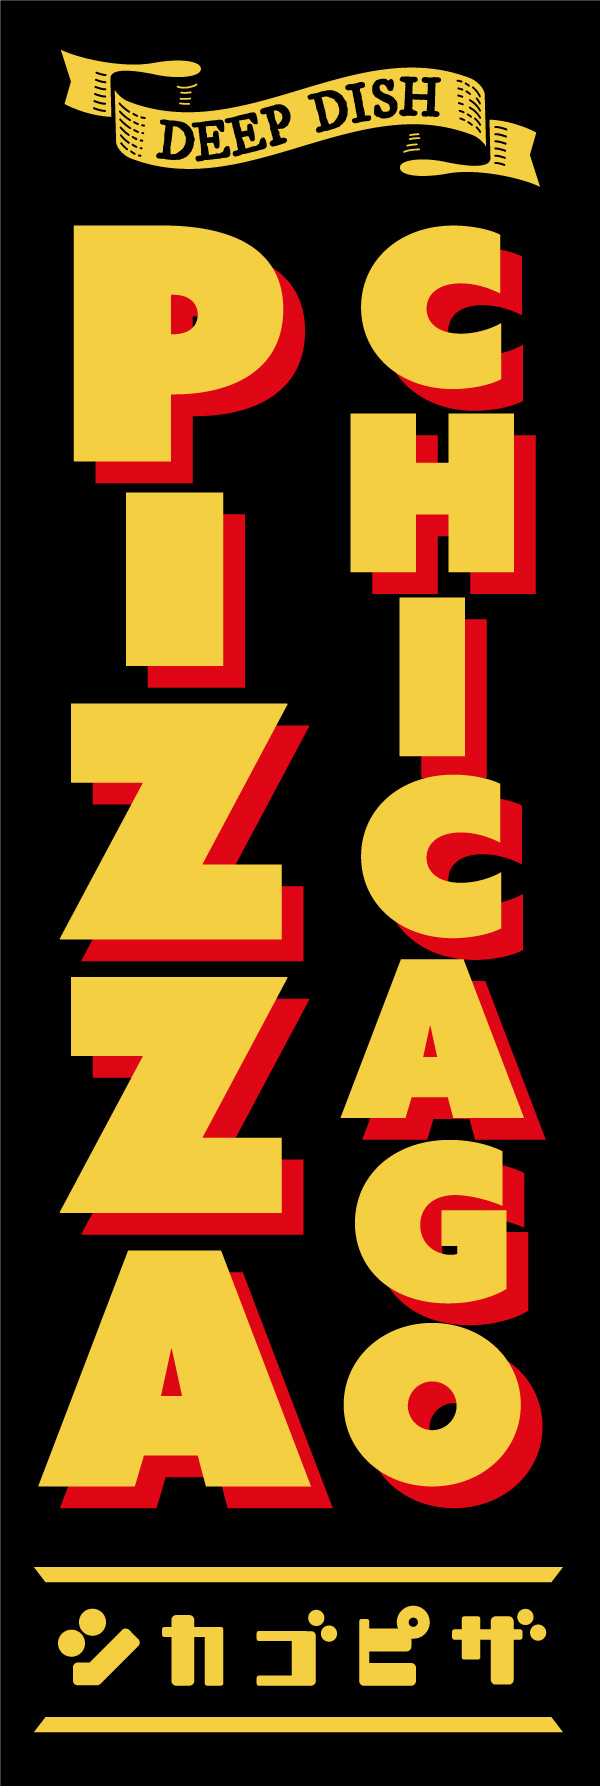 シカゴピザ 154_01 「CHICAGO PIZZA（シカゴピザ）」の幟です。別名「ディープディッシュピザ」なので「DEEP DISH」のリボンを入れたデザインにしました。（Y.M）